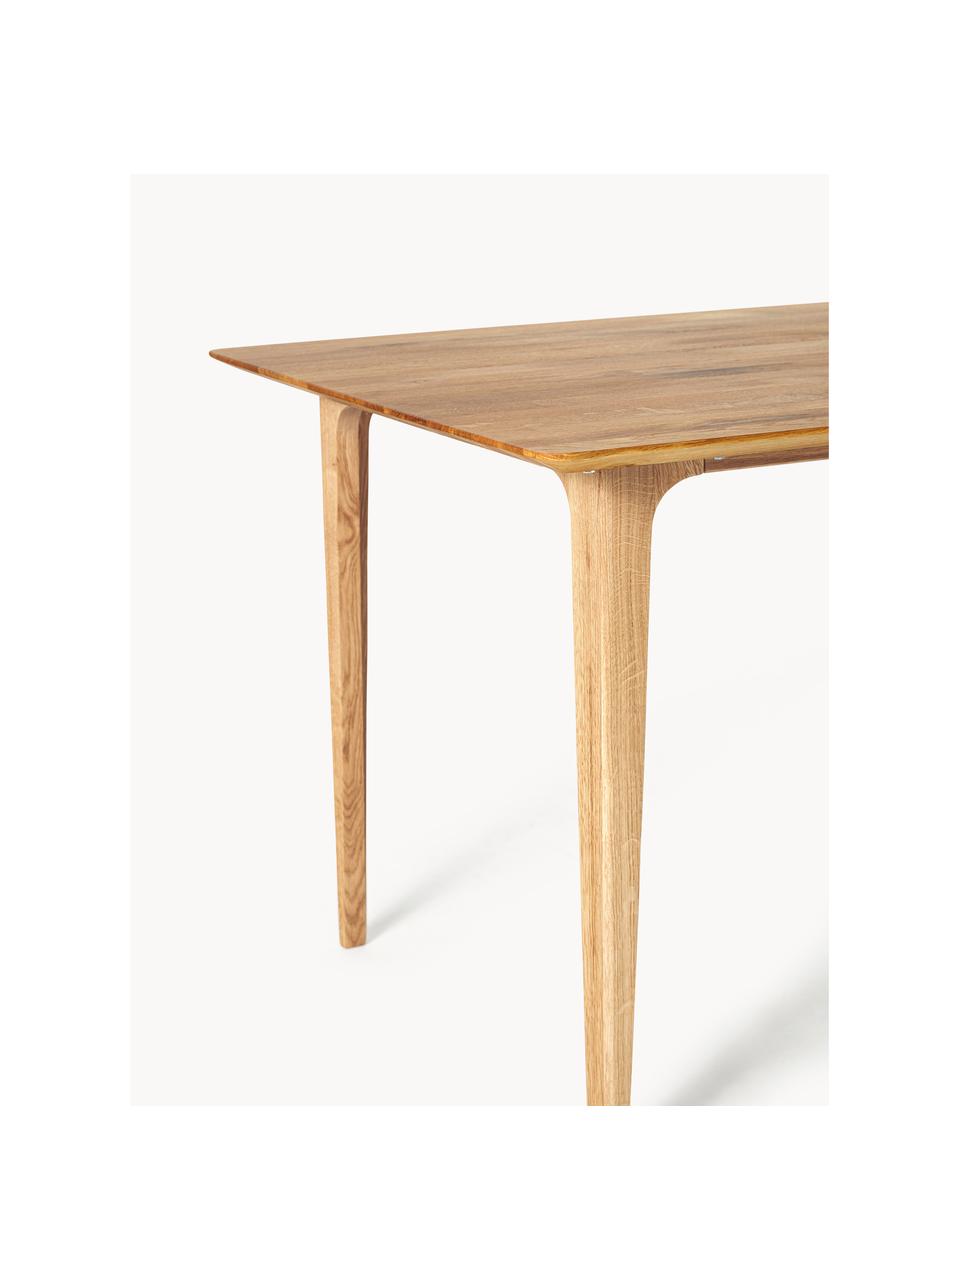 Jedálenský stôl z dubového dreva Archie, rôzne veľkosti, Masívne dubové drevo, ošetrené olejom

Tento produkt je vyrobený z trvalo udržateľného dreva s certifikátom FSC®., Dubové drevo, ošetrené olejom, Š 180 x H 90 cm